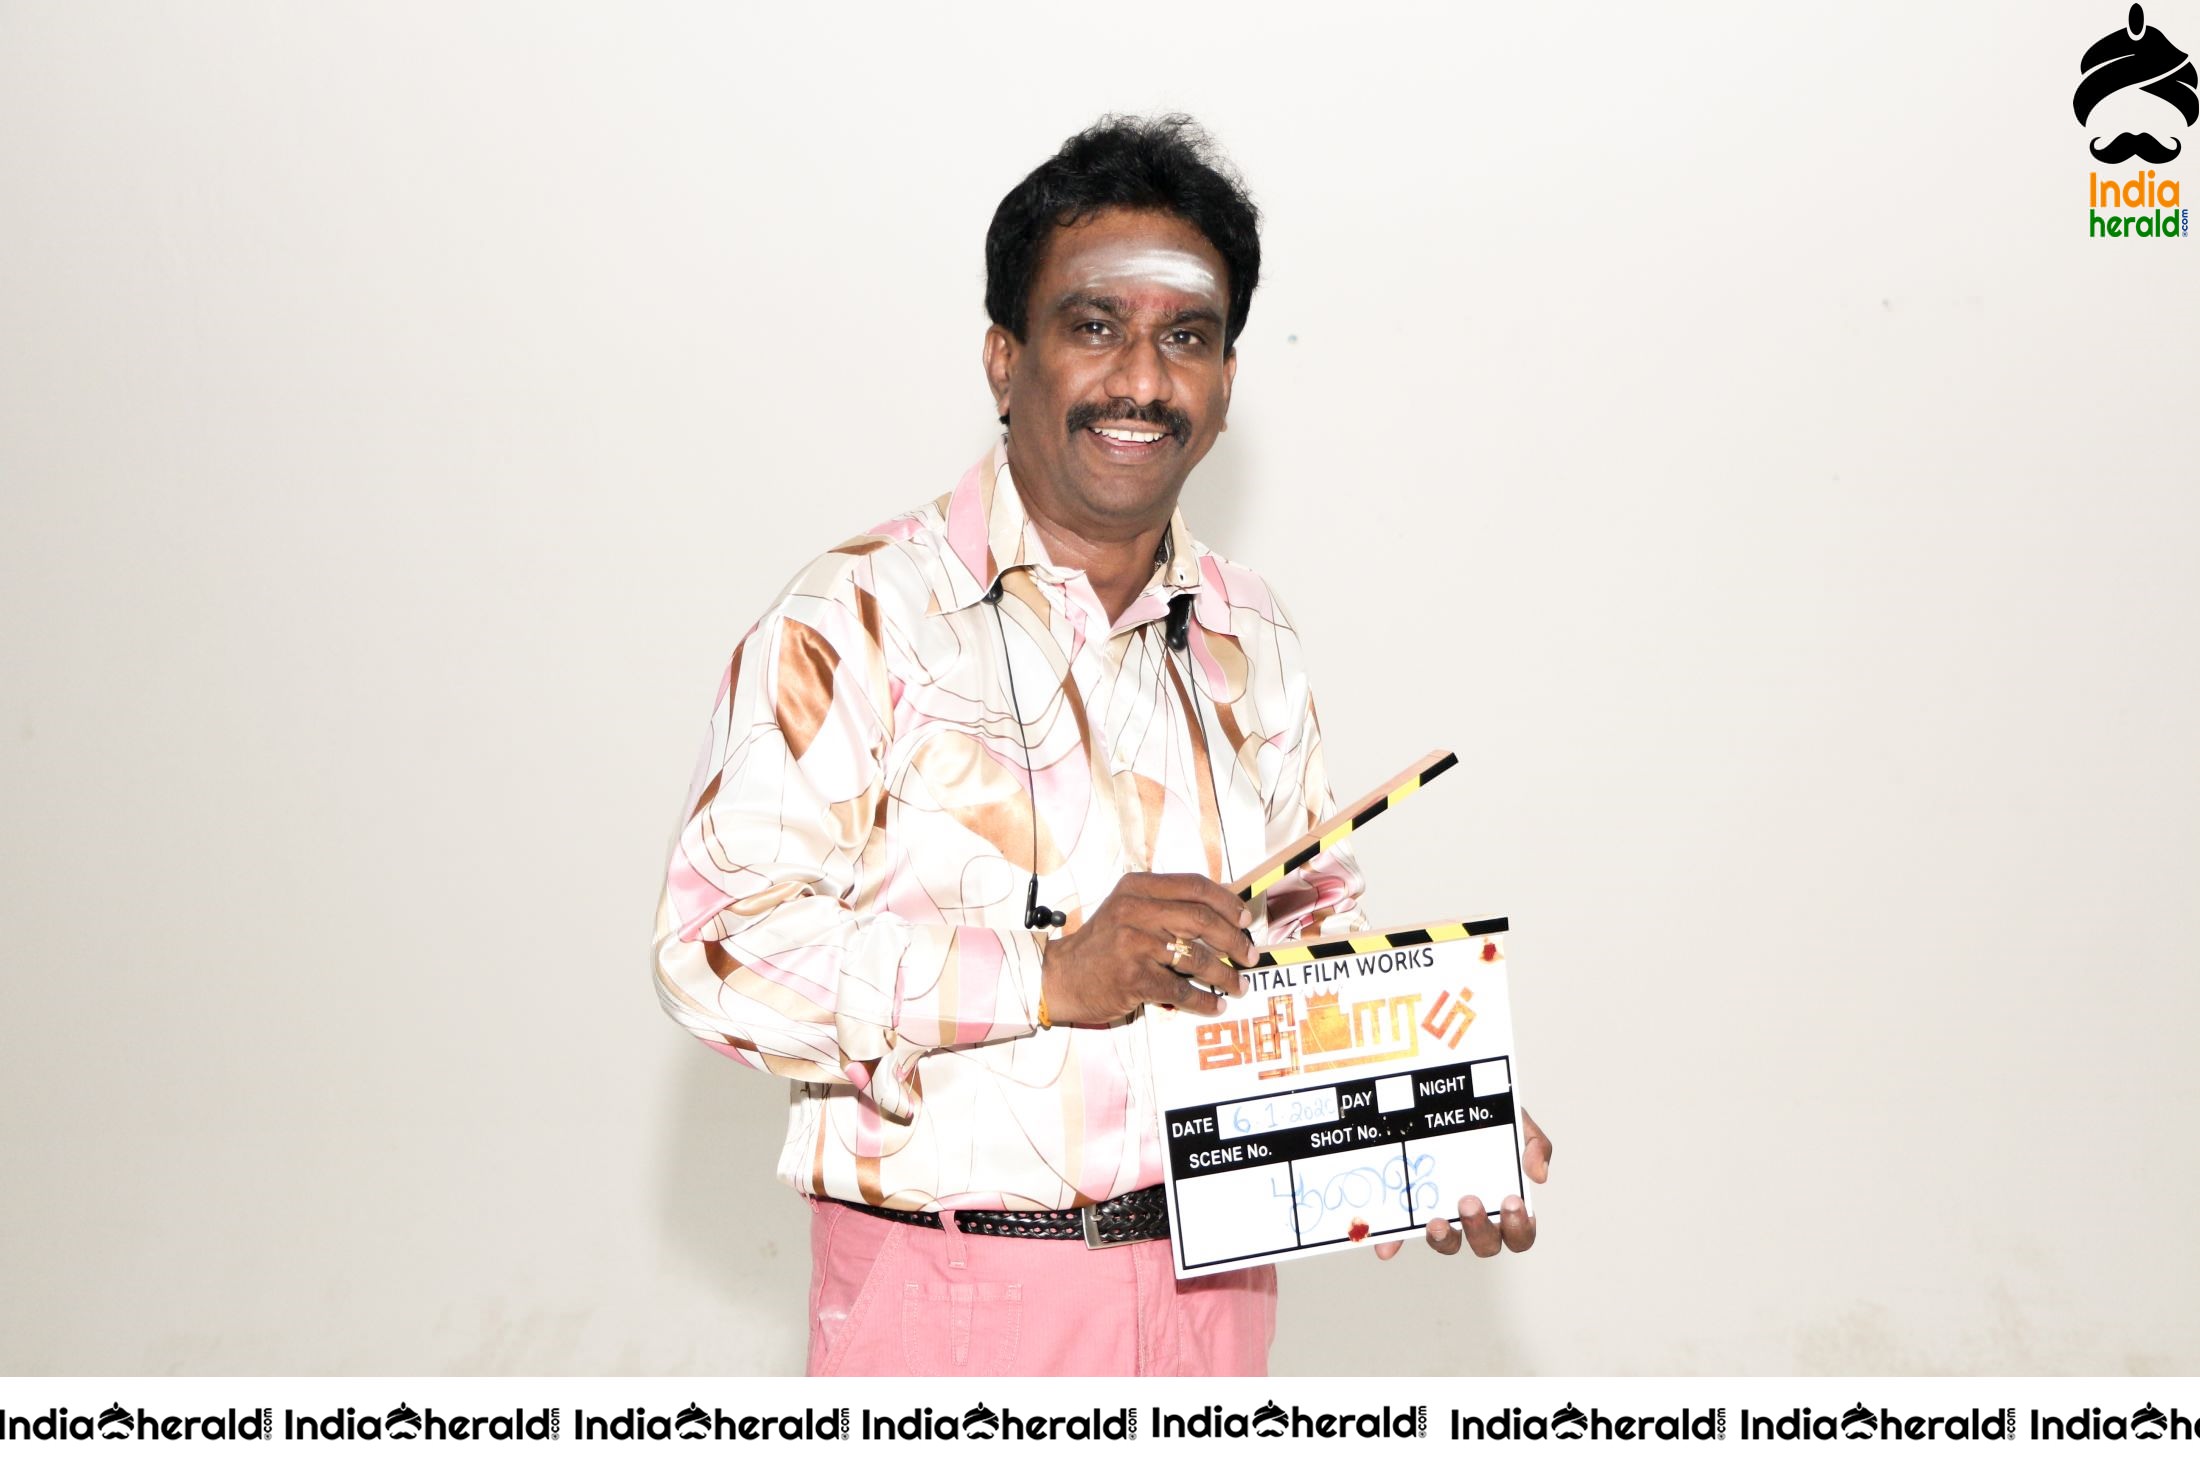 Capital Film Works Pooja Stills Set 5